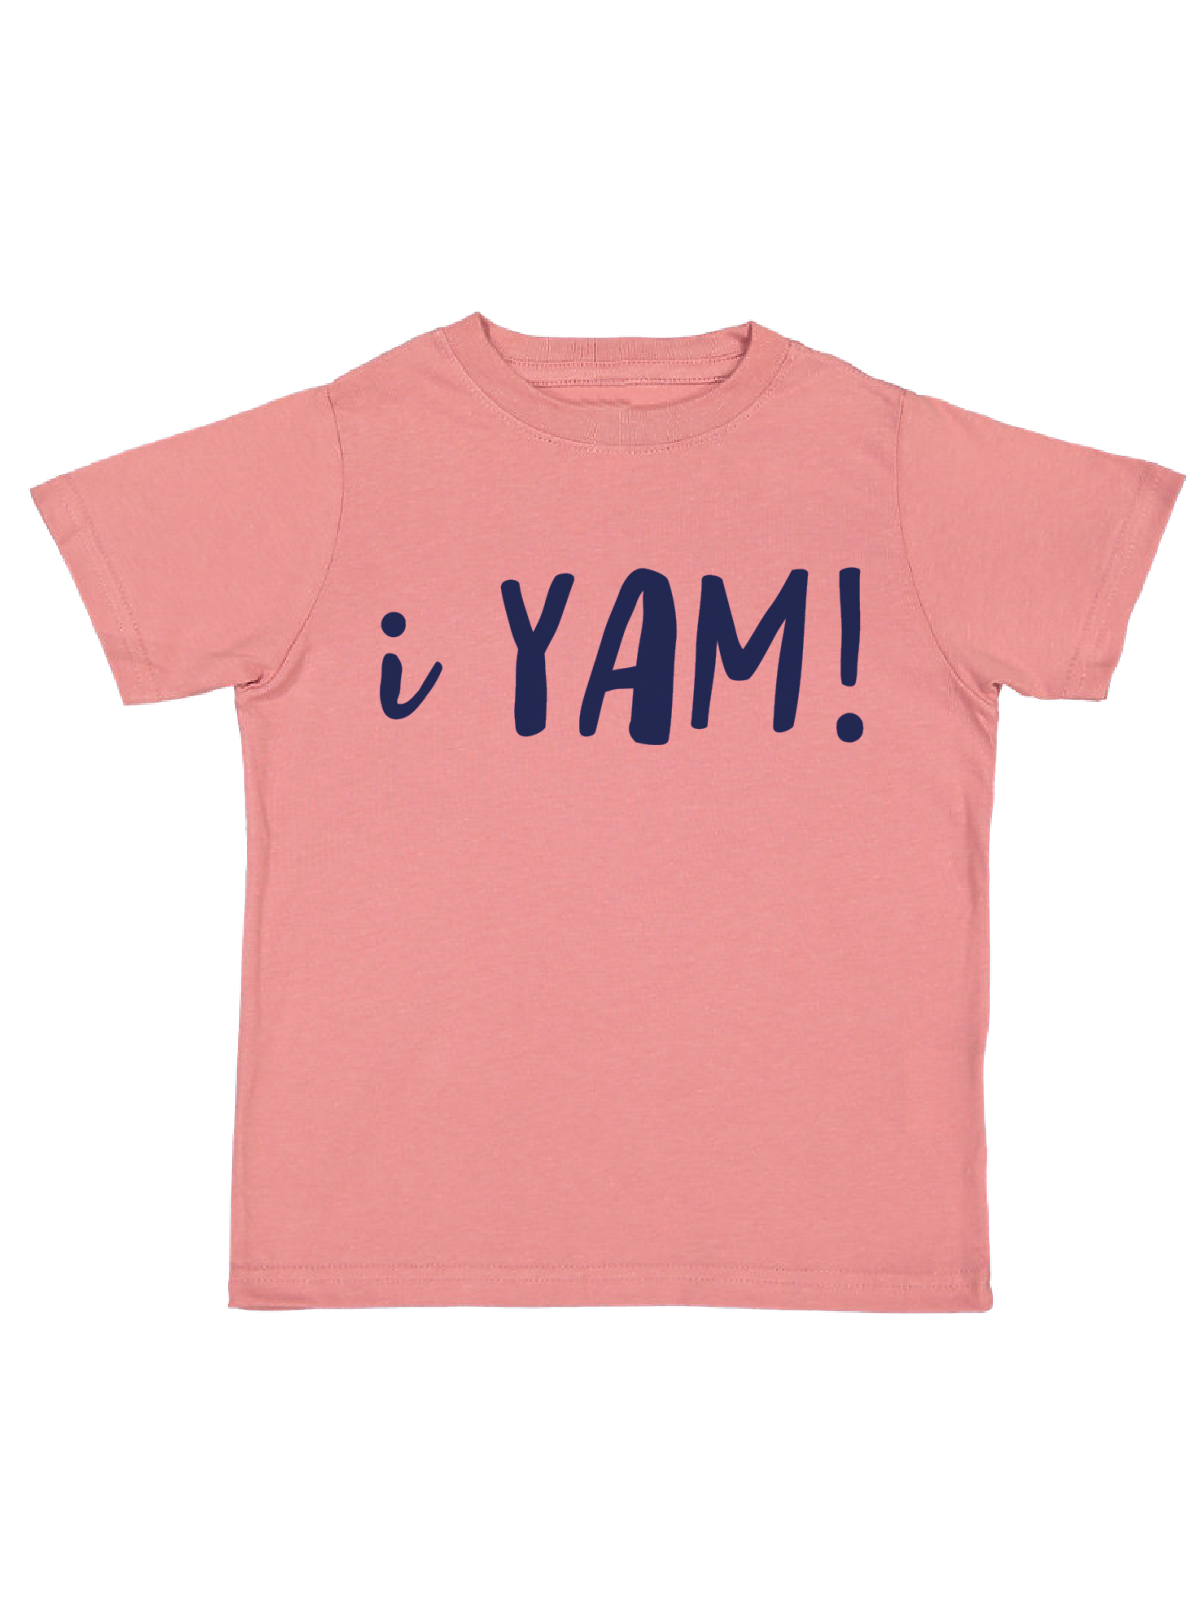 I Yam Kids Matching Shirt